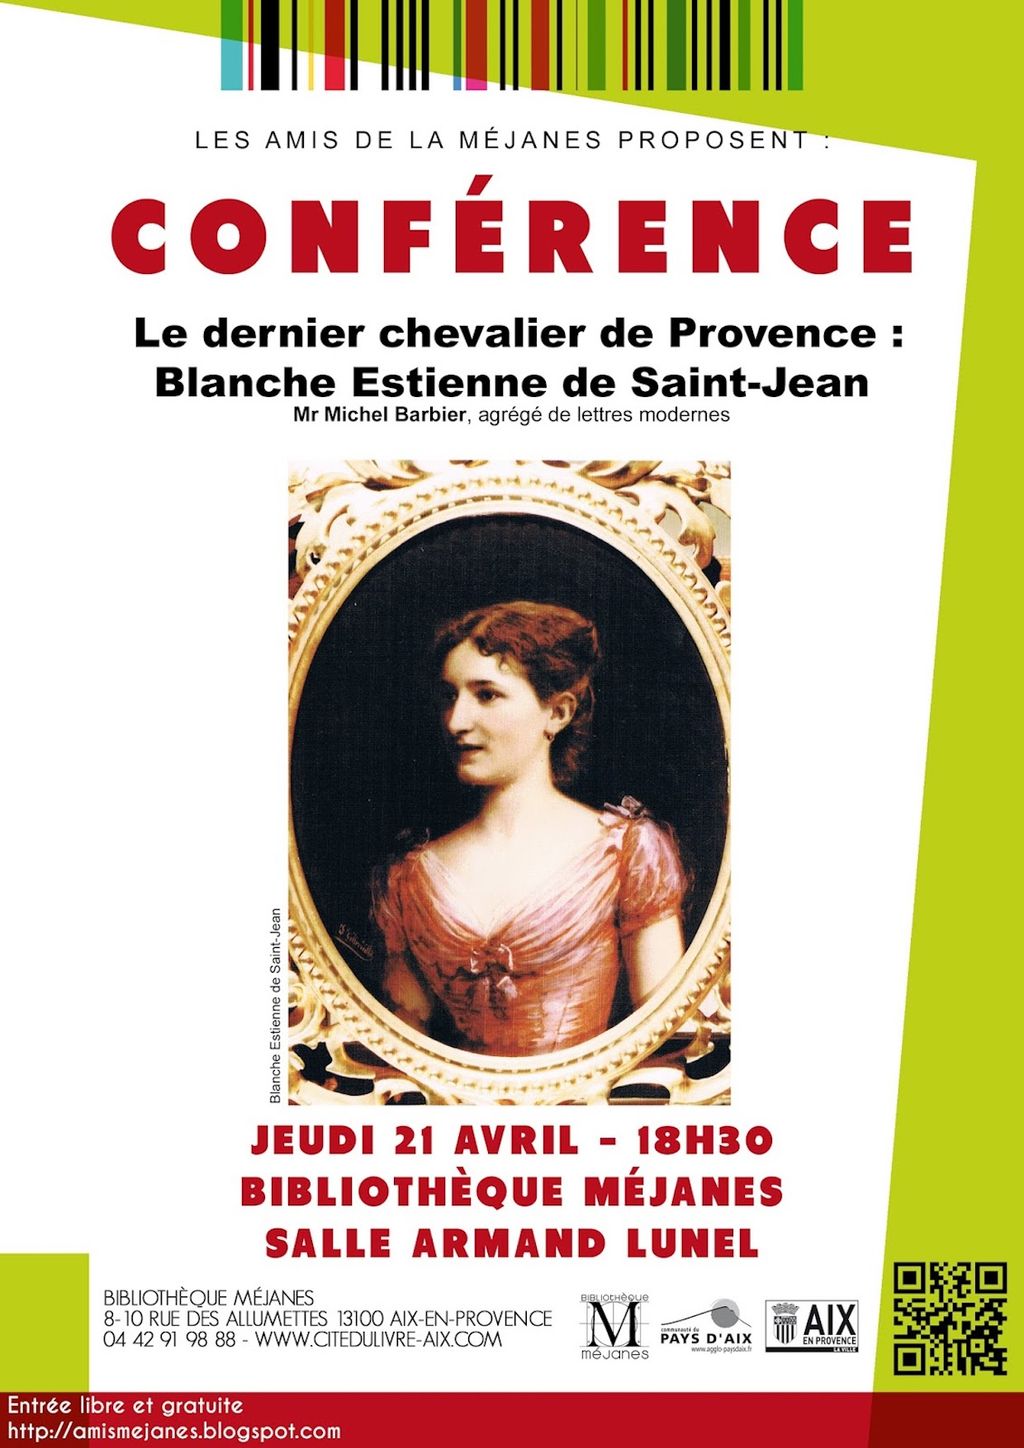 Blanche Estienne de Saint-Jean